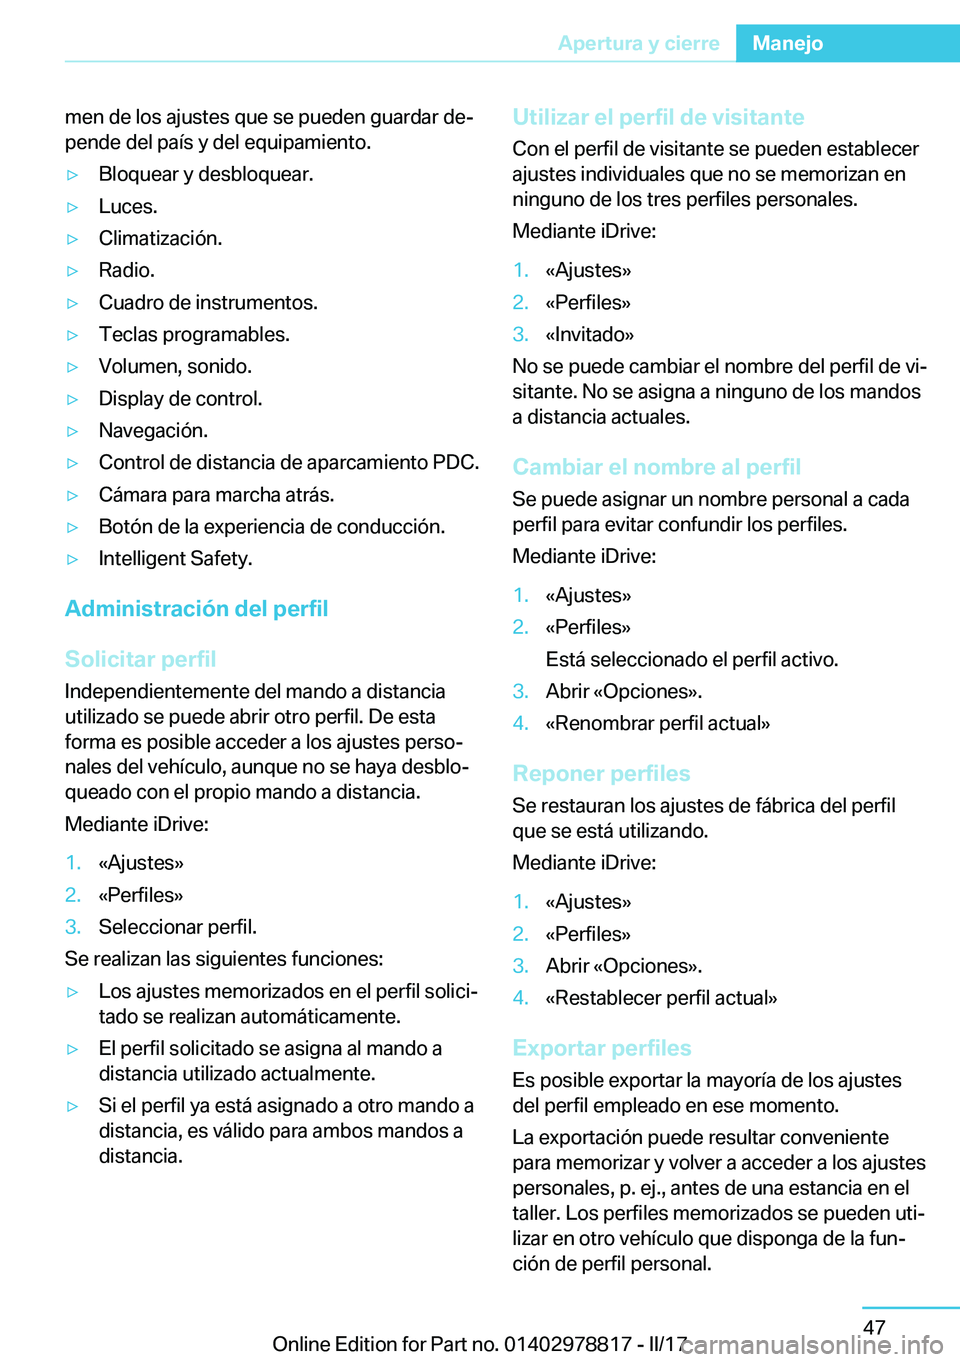 BMW I3 2017  Manuales de Empleo (in Spanish) �m�e�n� �d�e� �l�o�s� �a�j�u�s�t�e�s� �q�u�e� �s�e� �p�u�e�d�e�n� �g�u�a�r�d�a�r� �d�ej�p�e�n�d�e� �d�e�l� �p�a�